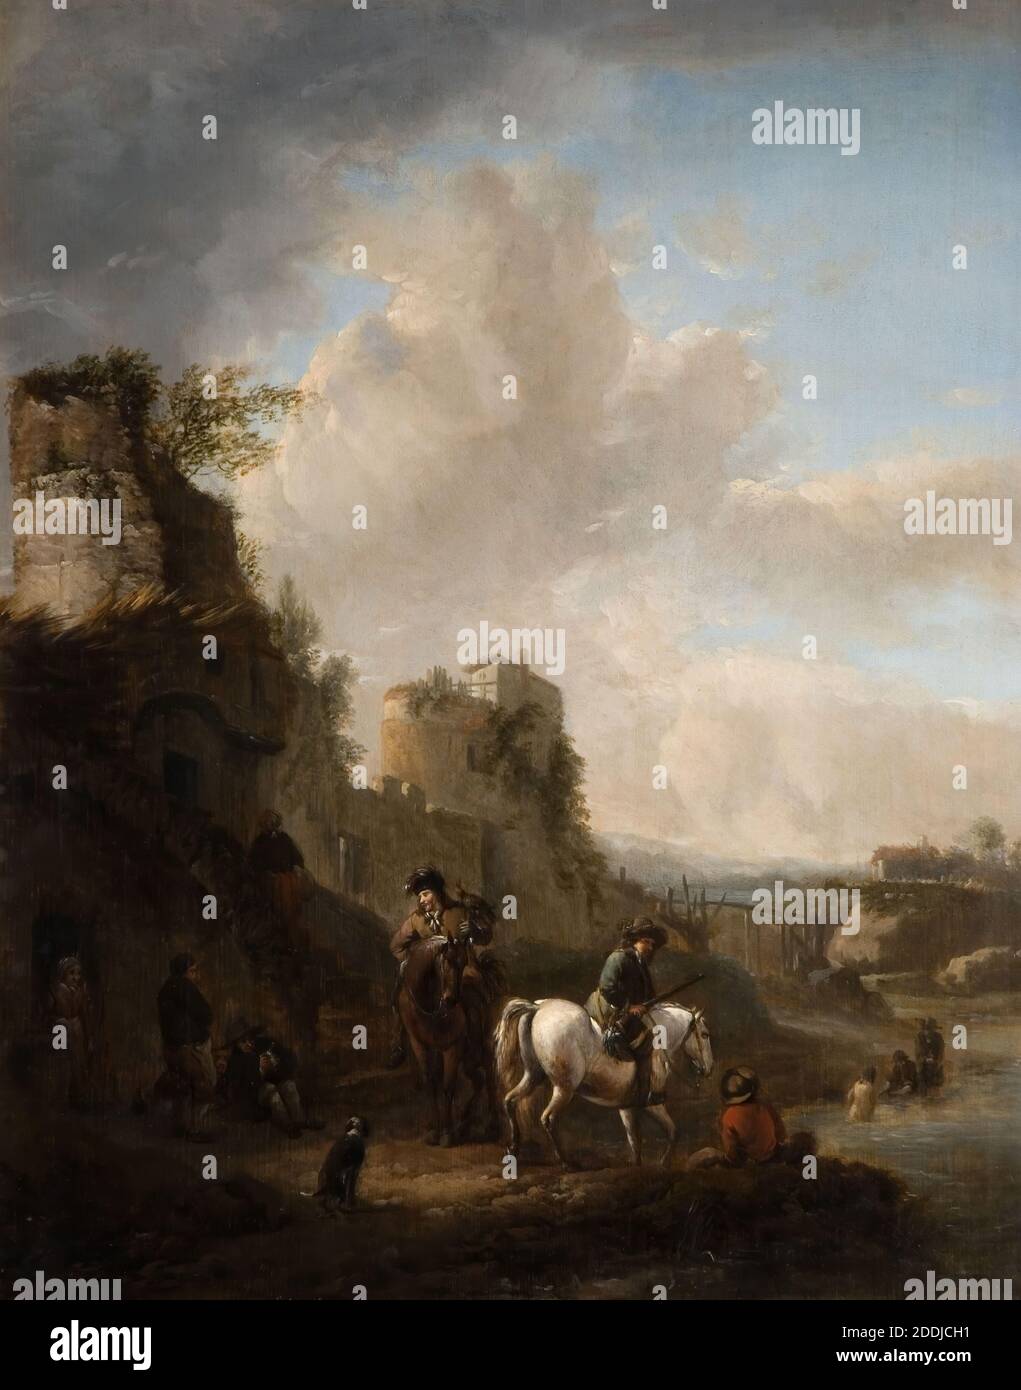 Le Ford, 1655-1665 Barrend Gael, Paysage, peinture à l'huile, Néerlandais, Baroque, ruines, nuage, animal, chien, animal, Cheval, Rivière Banque D'Images